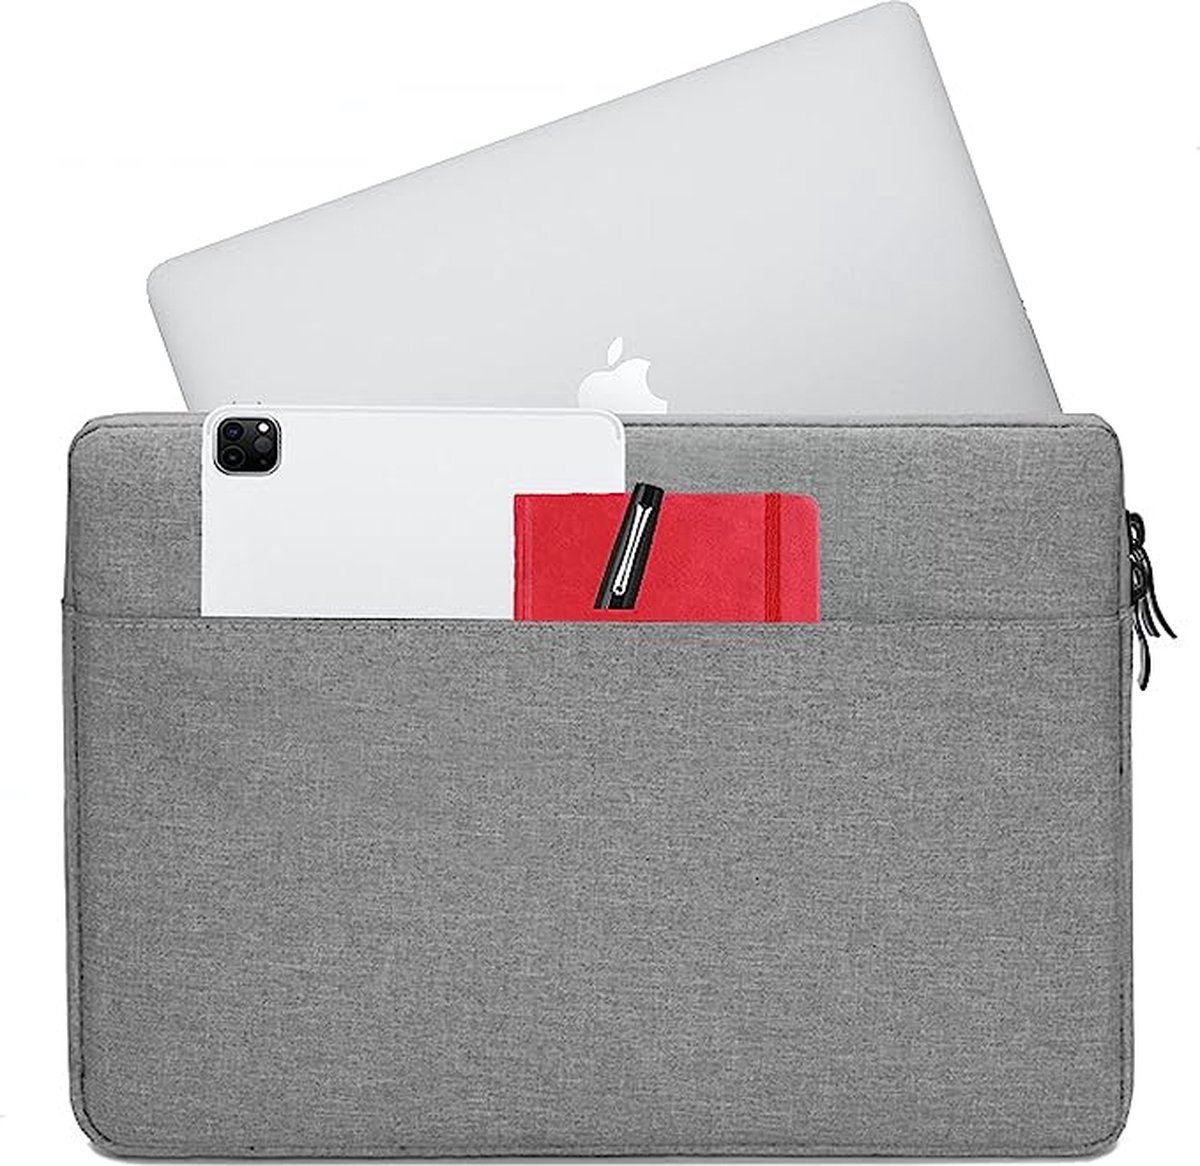 Obastyle Case / beschermhoes voor tablet en laptop geschikt tot 33 cm (13,3 inch), voor geschikt voor alle merken met deze formaat (11,6 inch 13,3 inch), grijs laptoptas